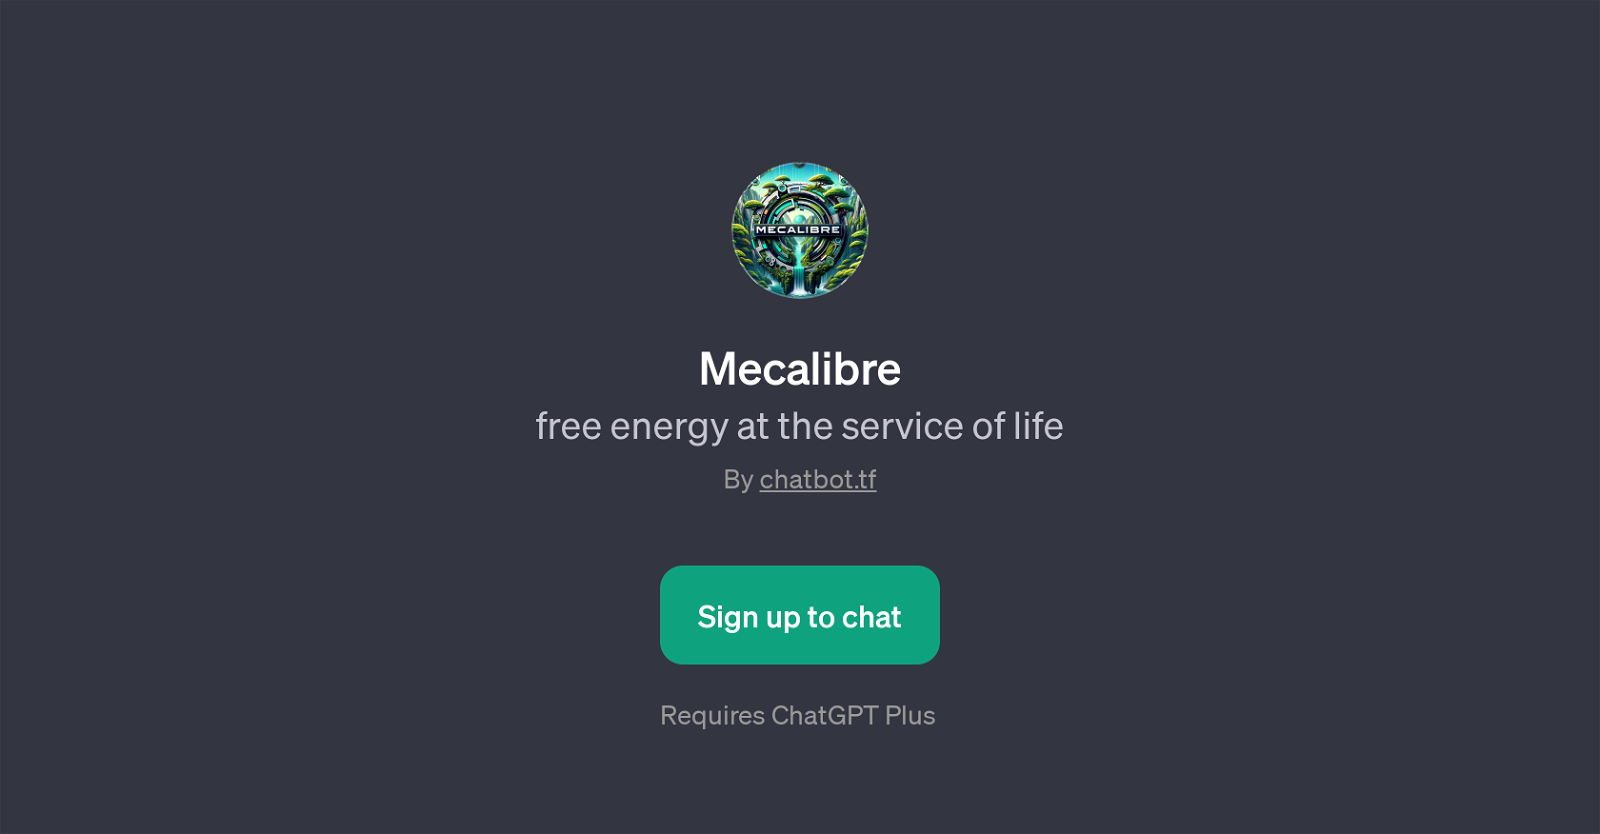 Mecalibre website